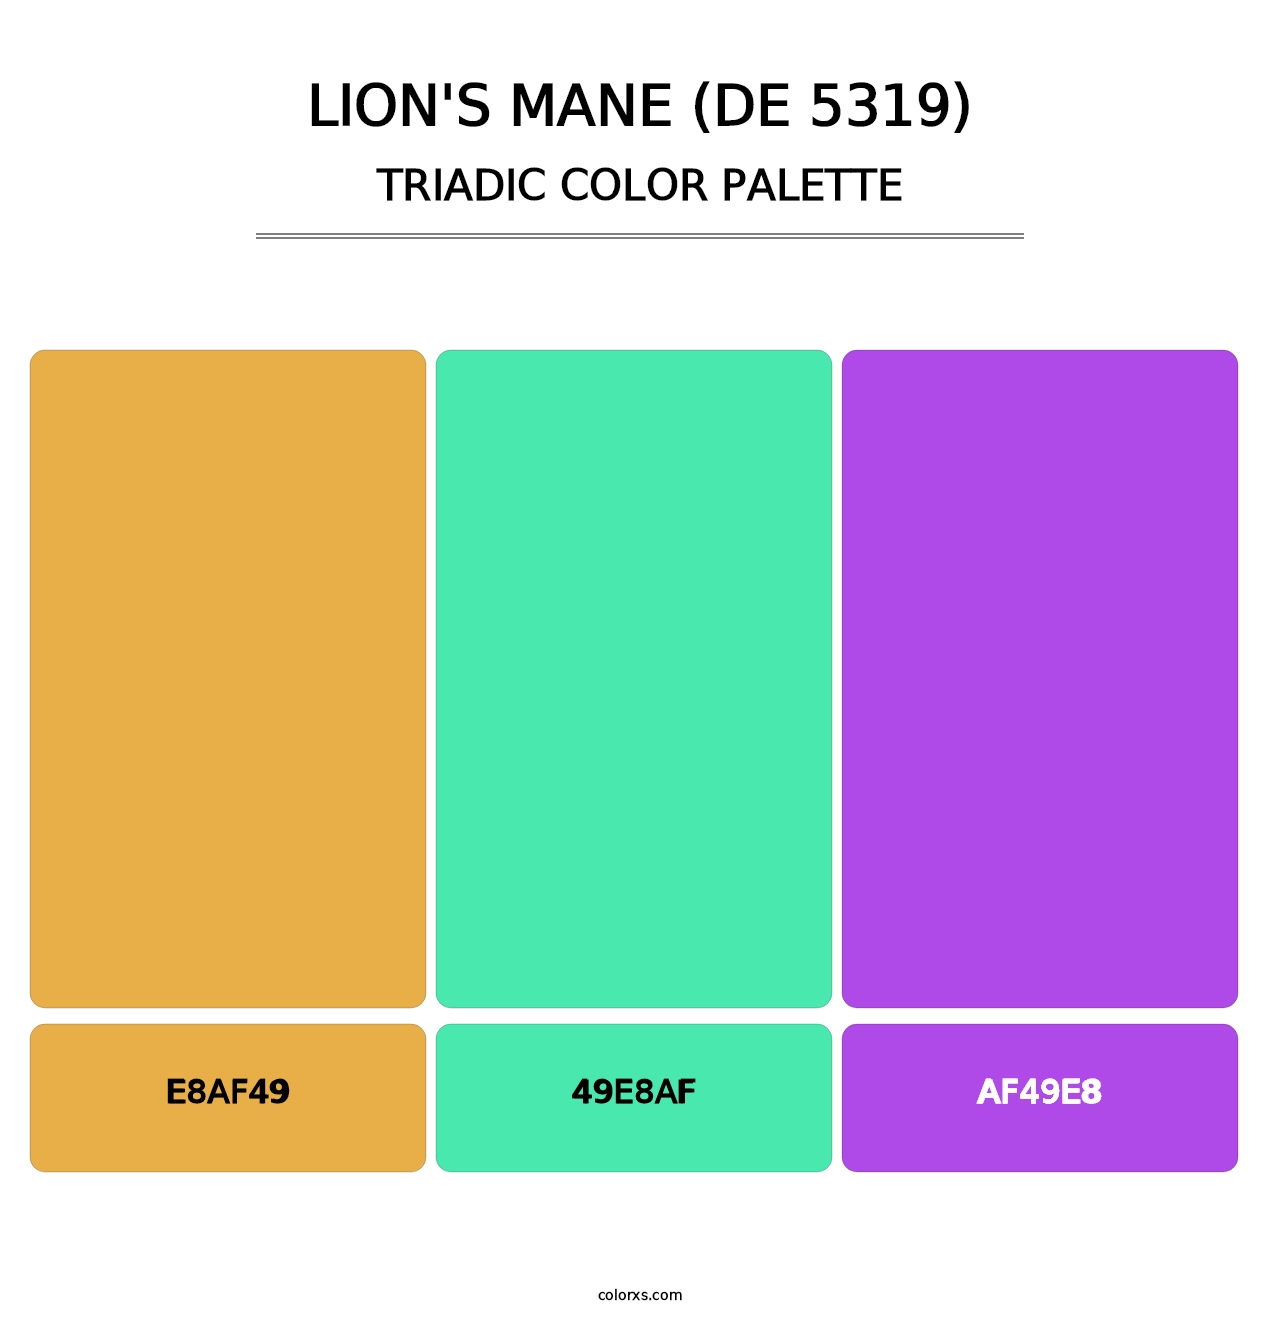 Lion's Mane (DE 5319) - Triadic Color Palette